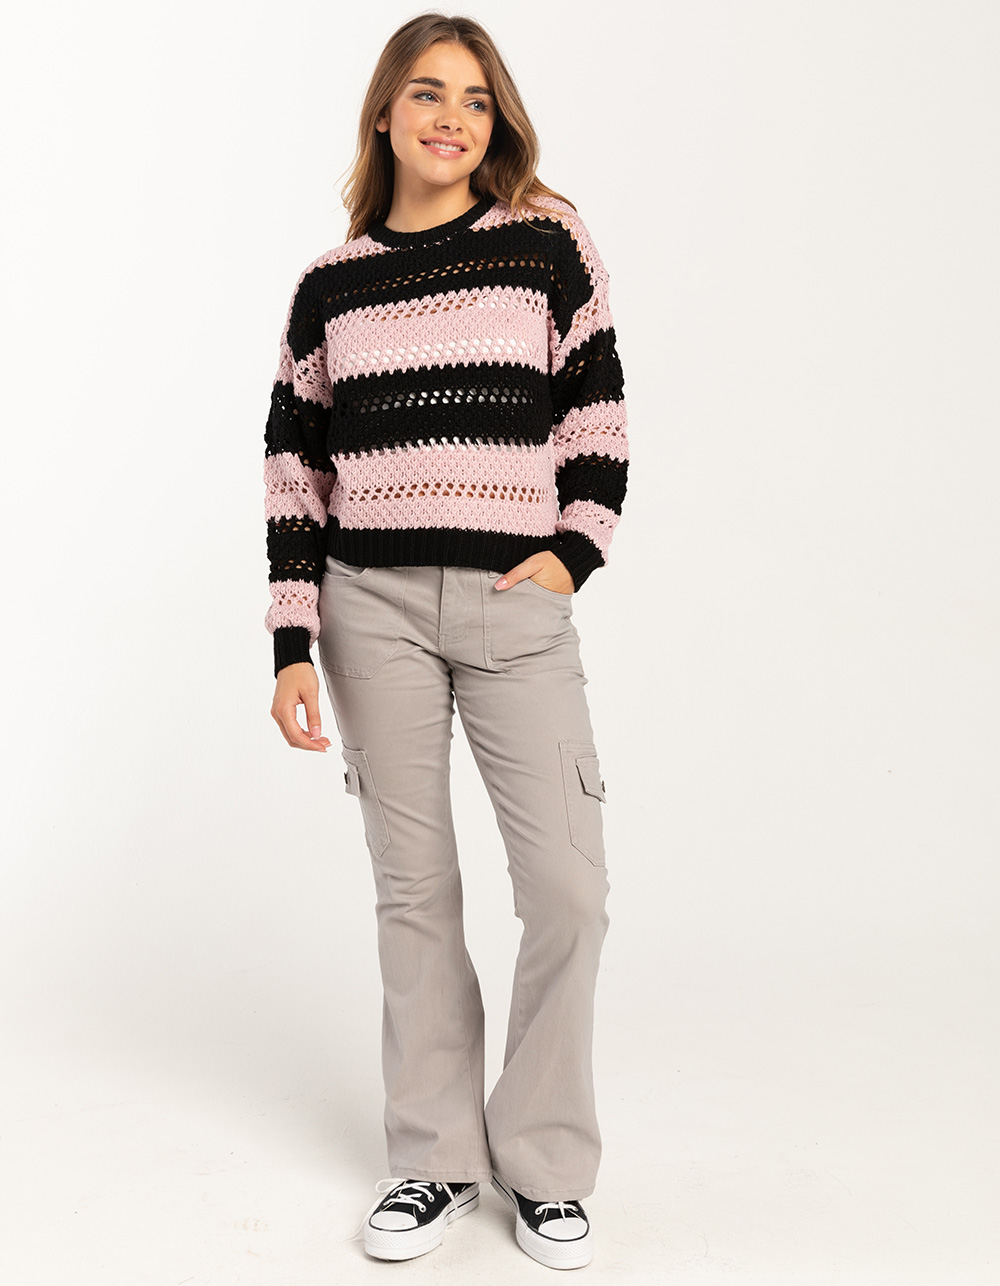 FULL TILT Swirl Girls Pullover Sweater